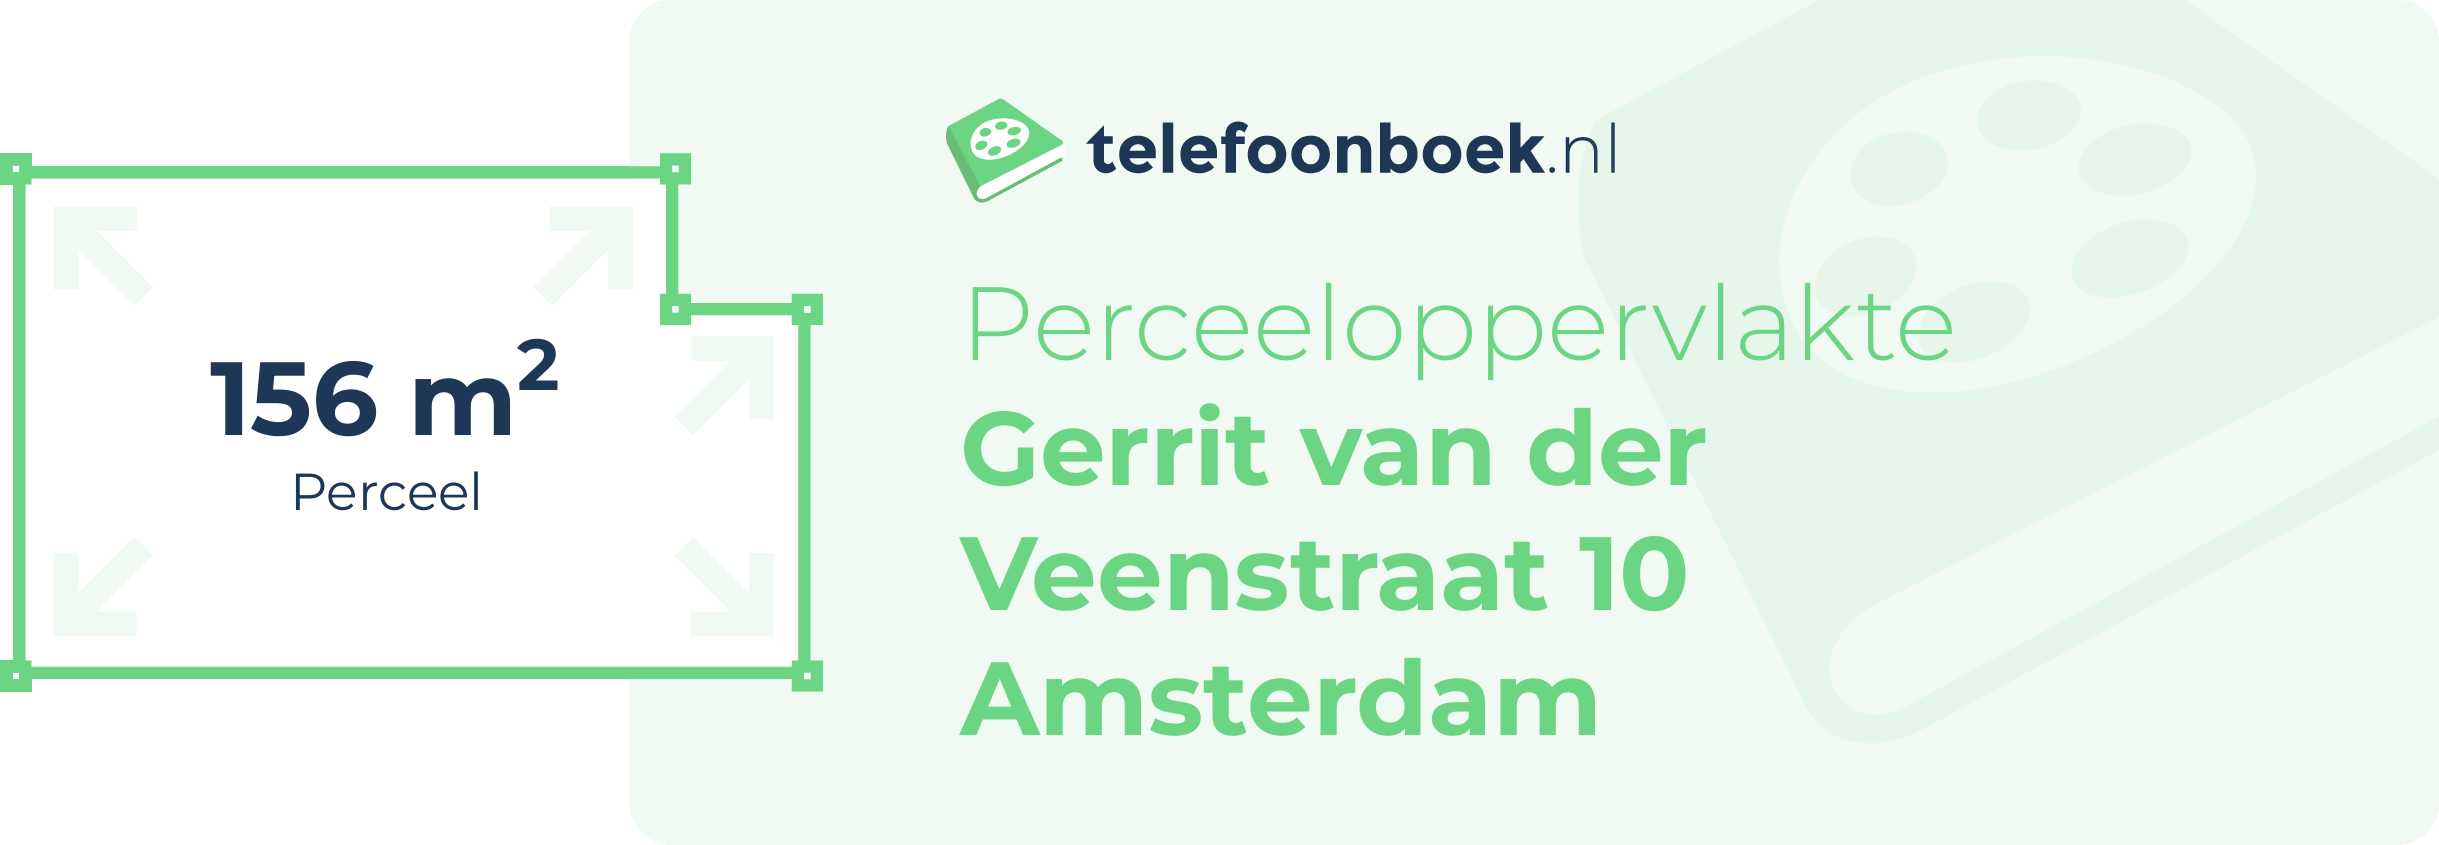 Perceeloppervlakte Gerrit Van Der Veenstraat 10 Amsterdam